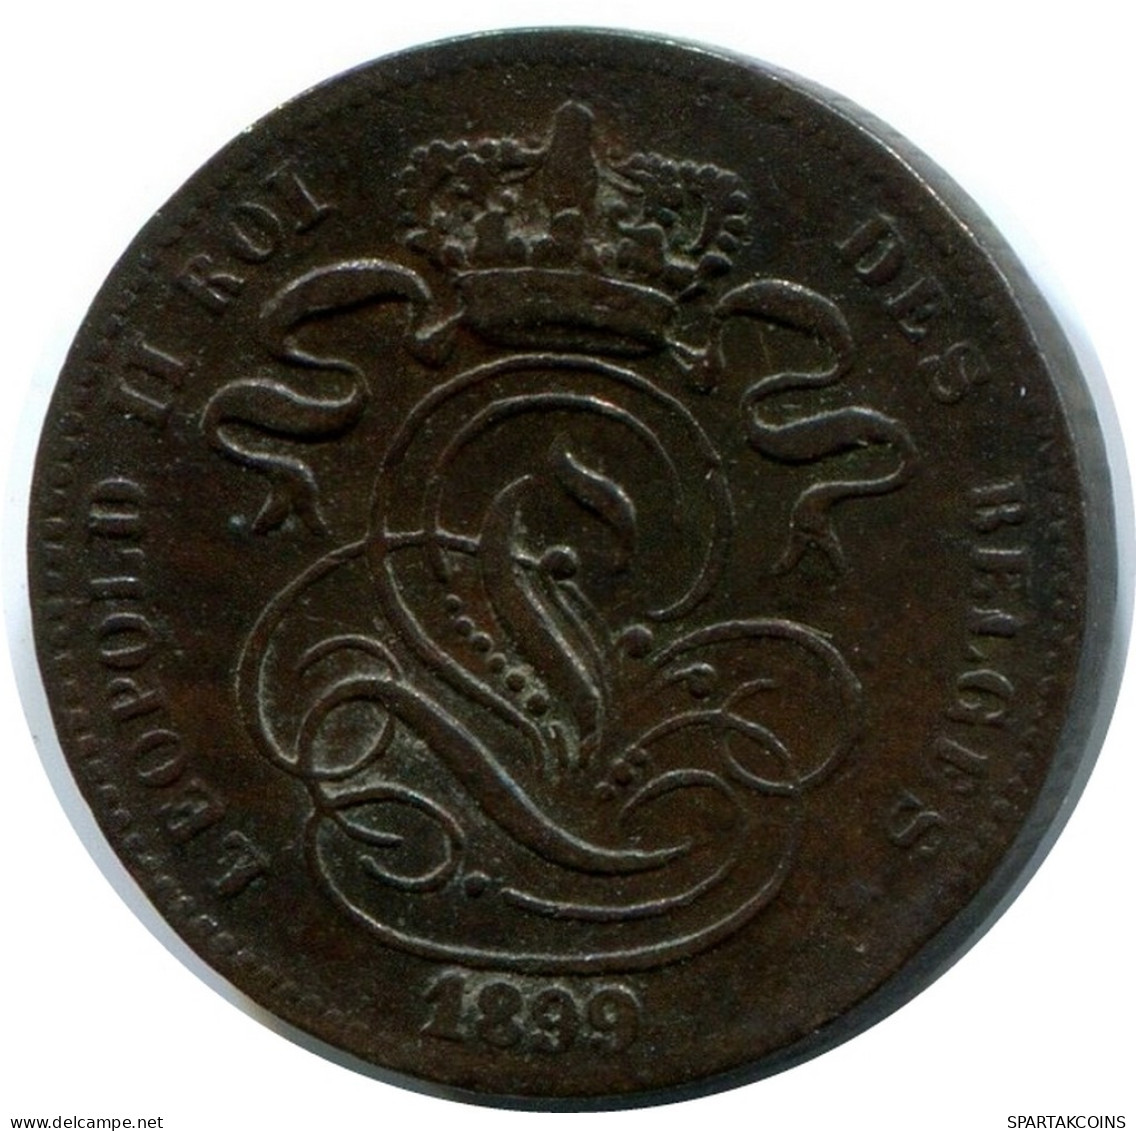 1 CENTIME 1899 BÉLGICA BELGIUM Moneda FRENCH Text #AX354.E - 1 Centime